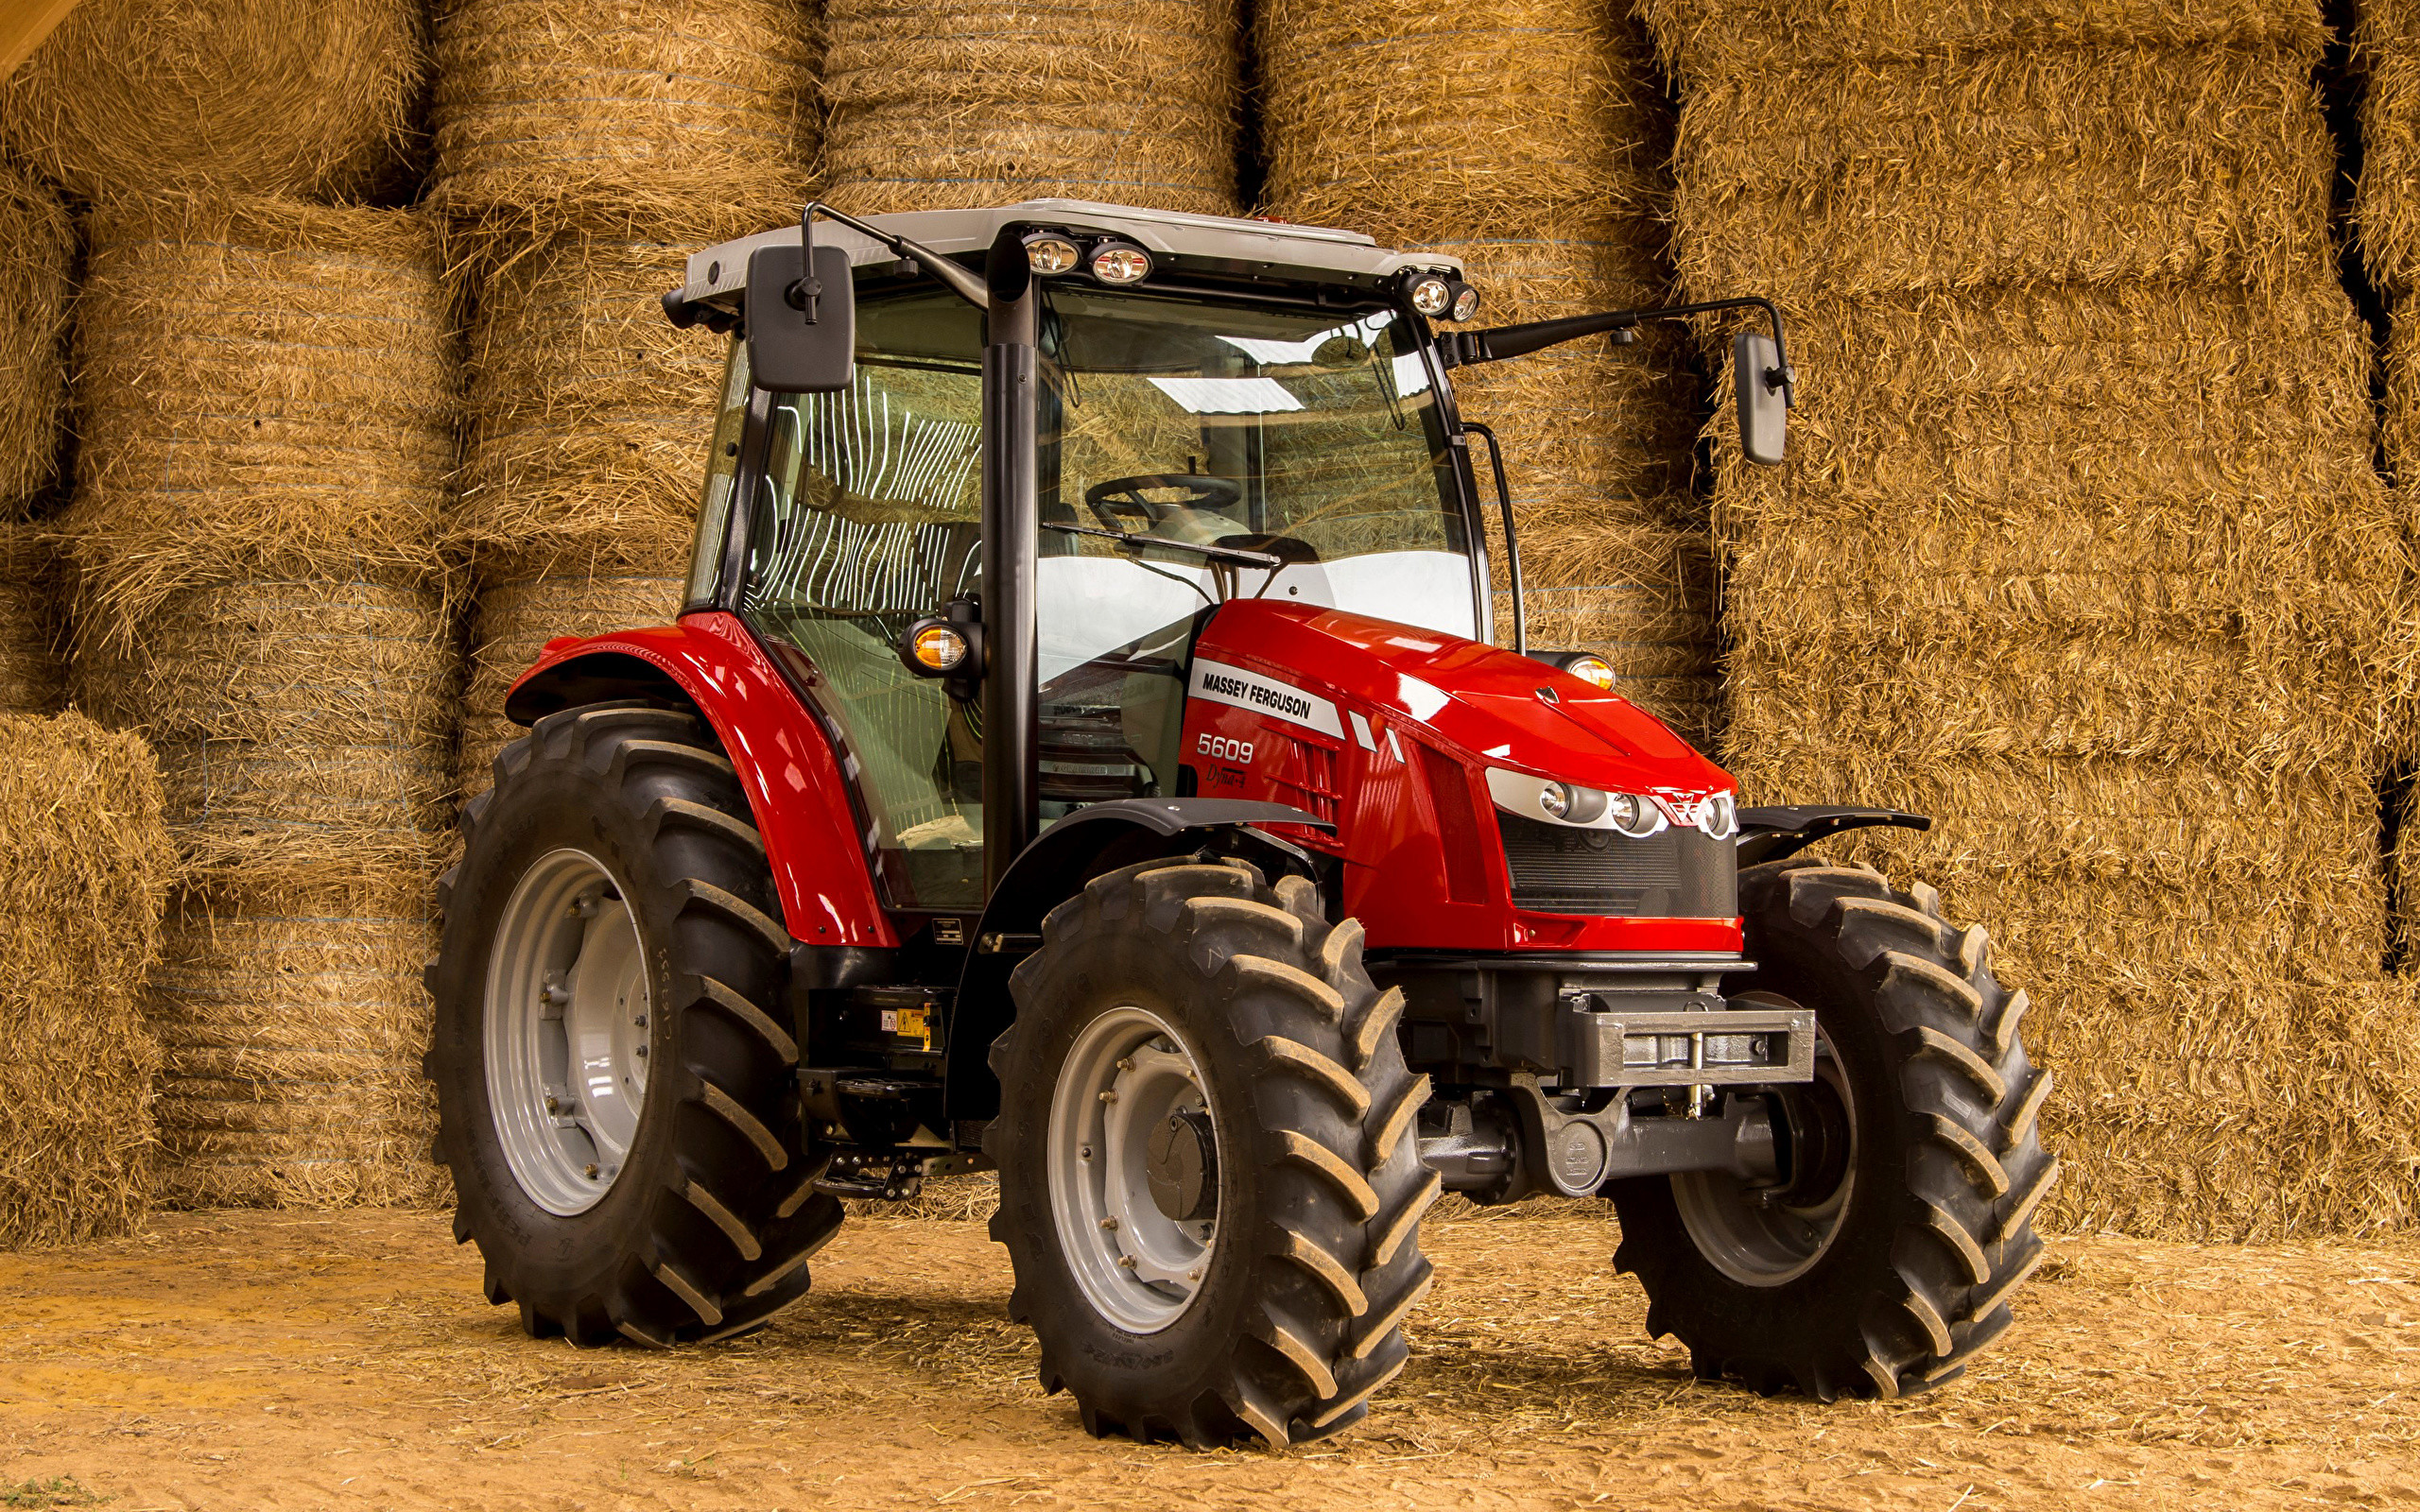 2560x1600 Wallpapers Tractor 2013-16 Massey Ferguson 5609 Hay 